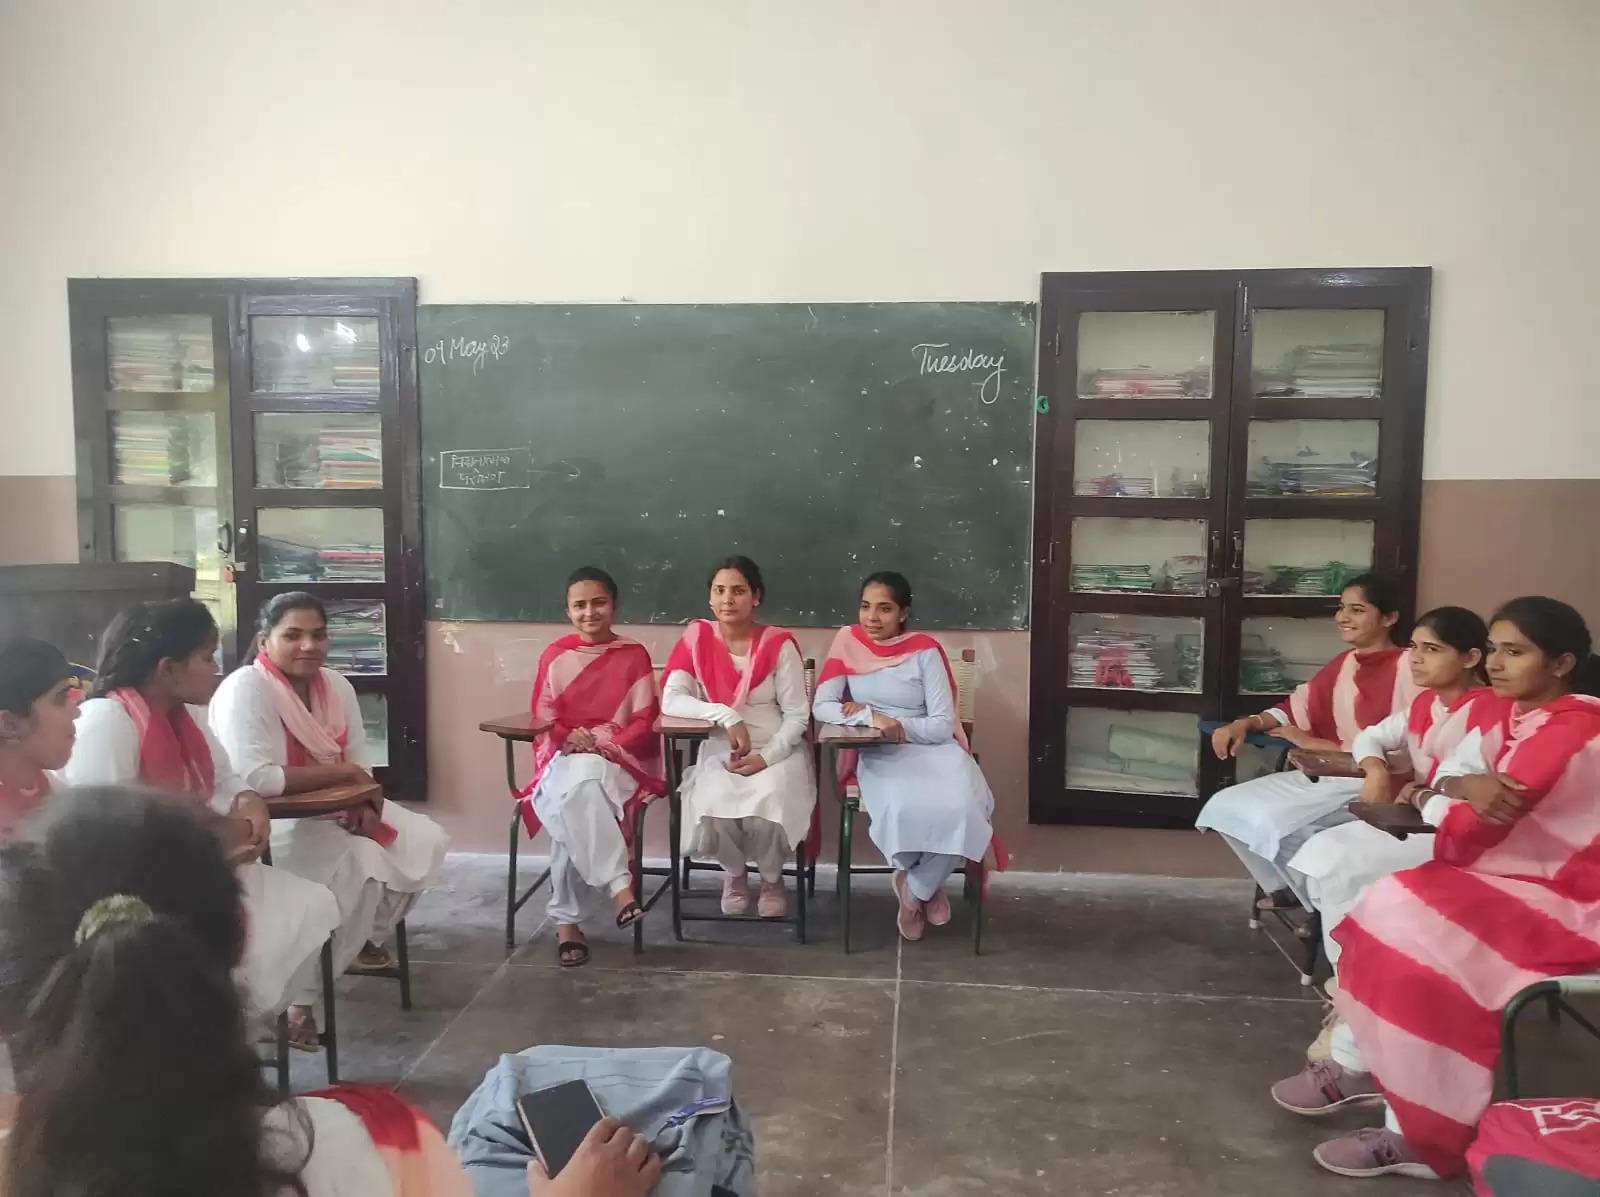 भगवान श्री कृष्ण महिला शिक्षण महाविद्यालय में  भाषा खेलों का आयोजन 